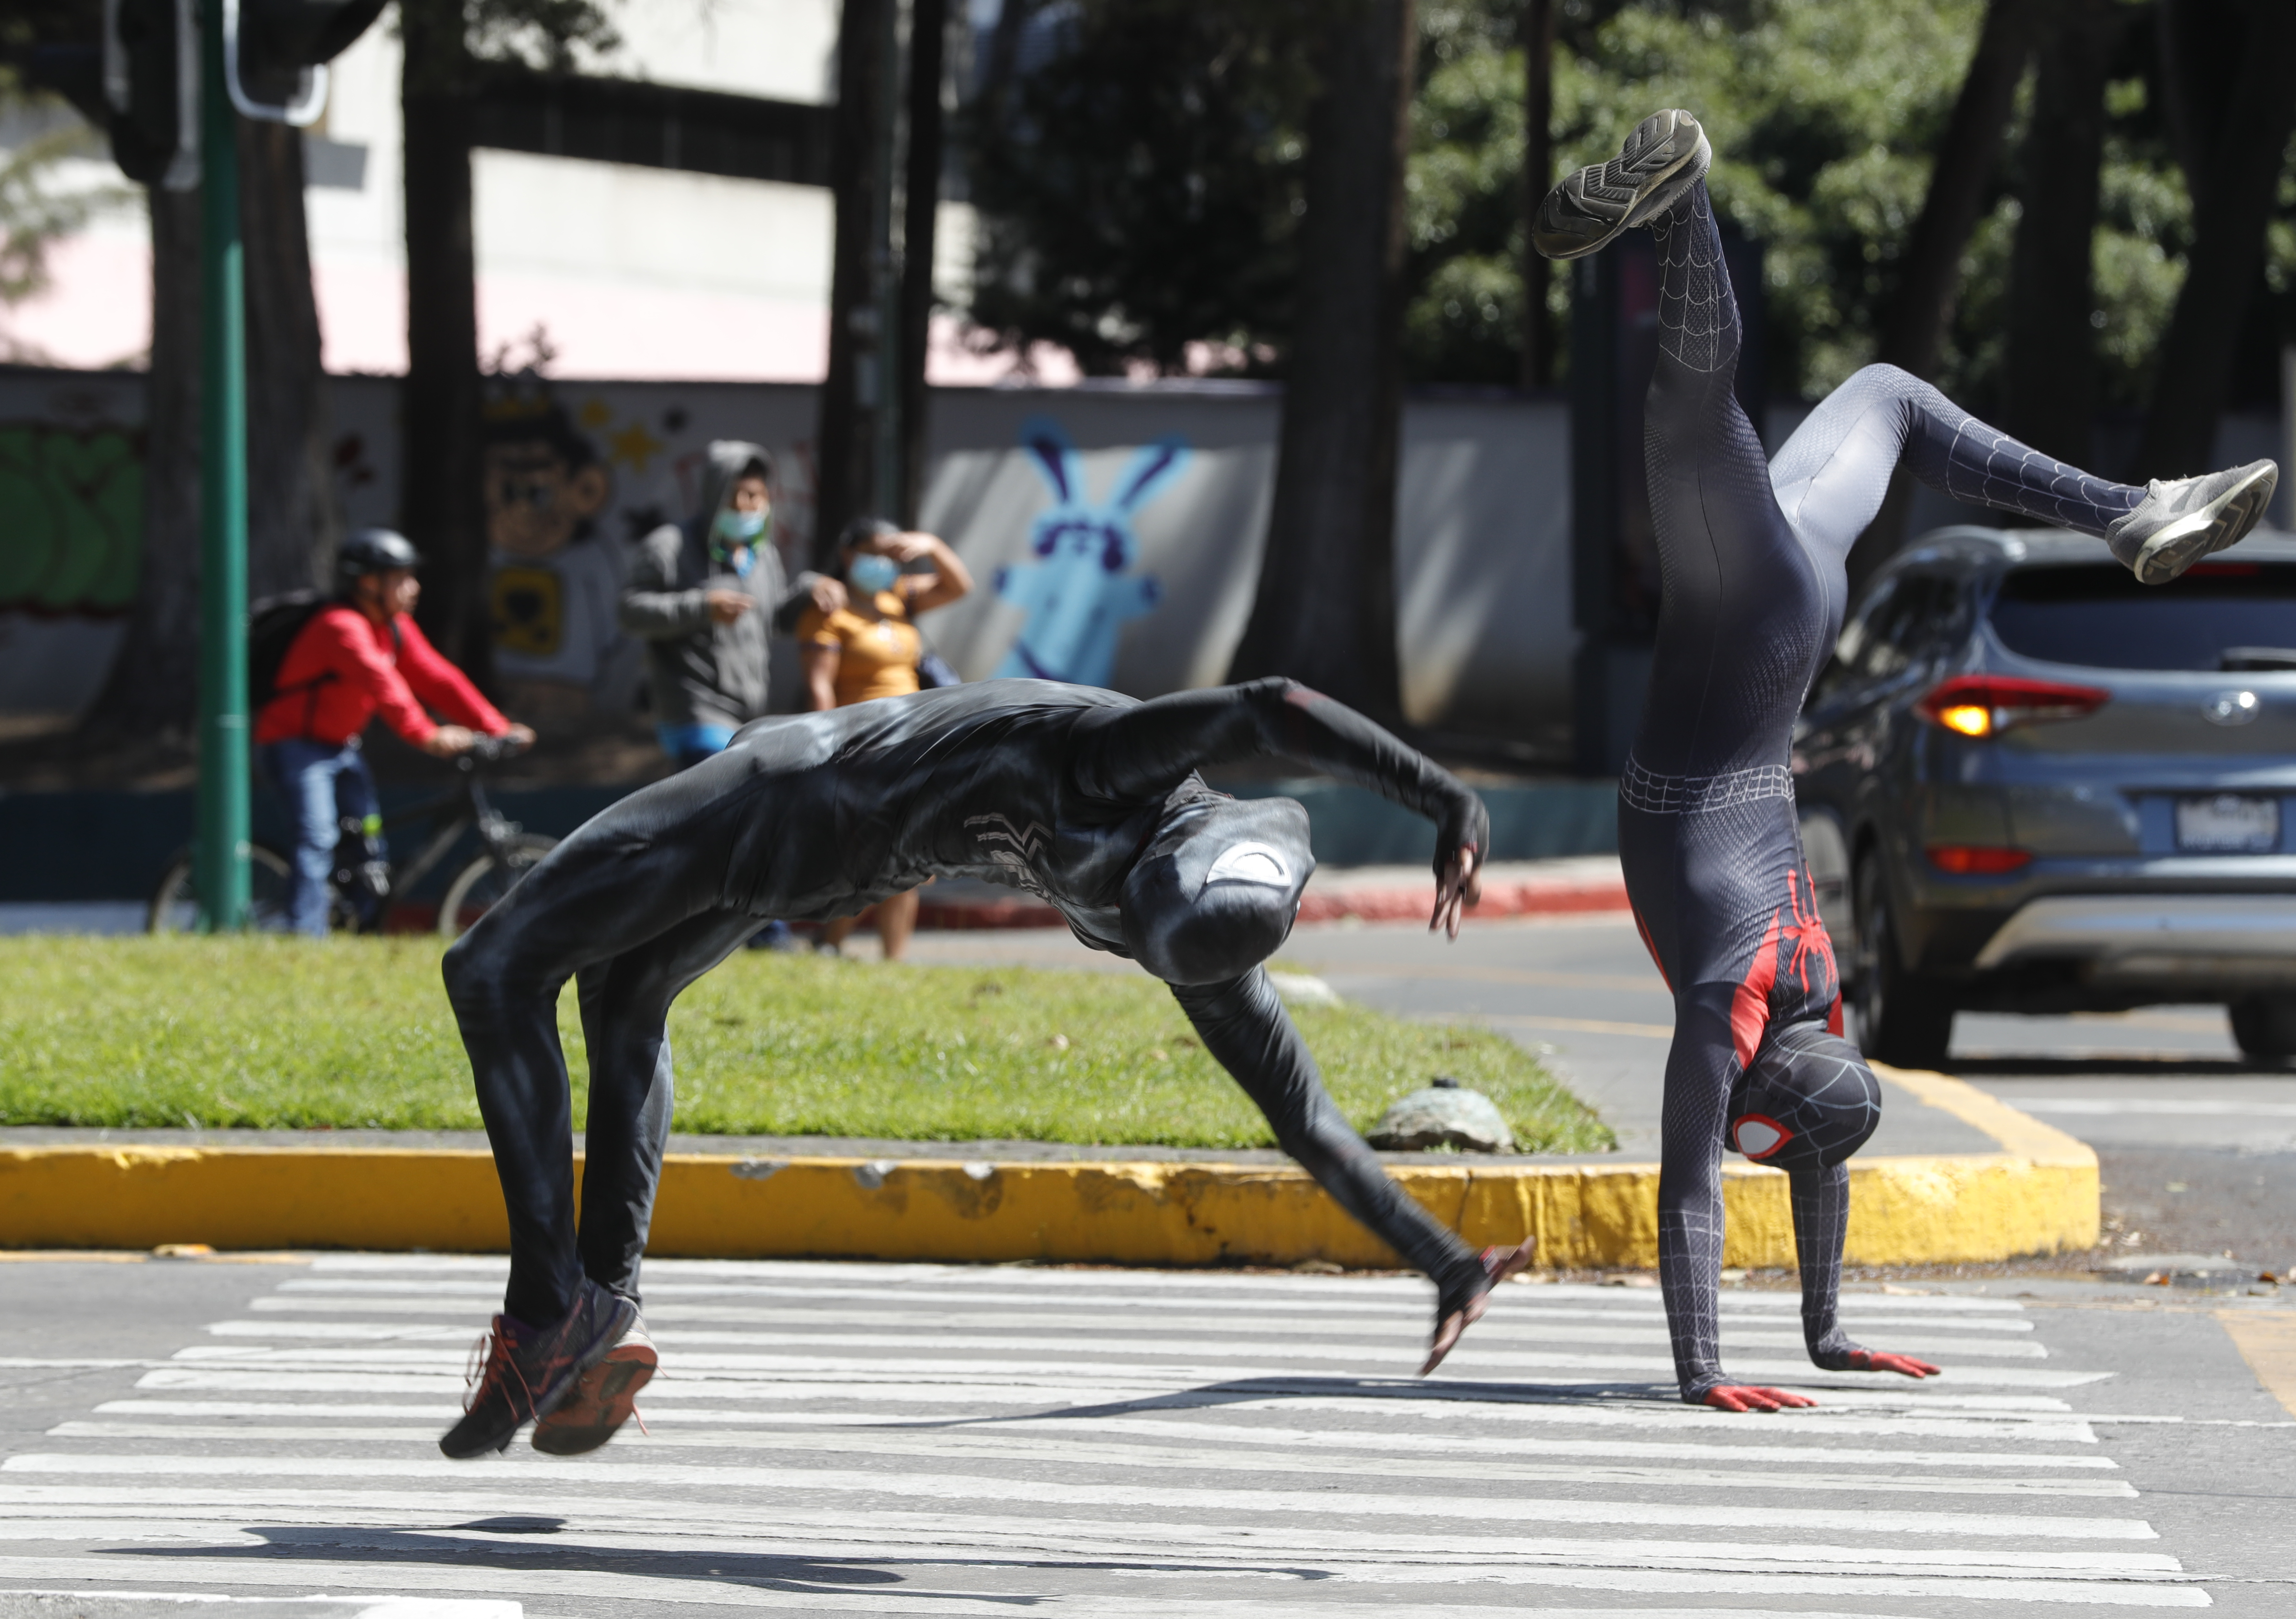 Personas que se dedican al arte de interpretar personajes de superhéroes, recorren las calles de la ciudad para sacarle una sonrisa a los automovilistas. 

(Foto Prensa Libre: Esbin García)